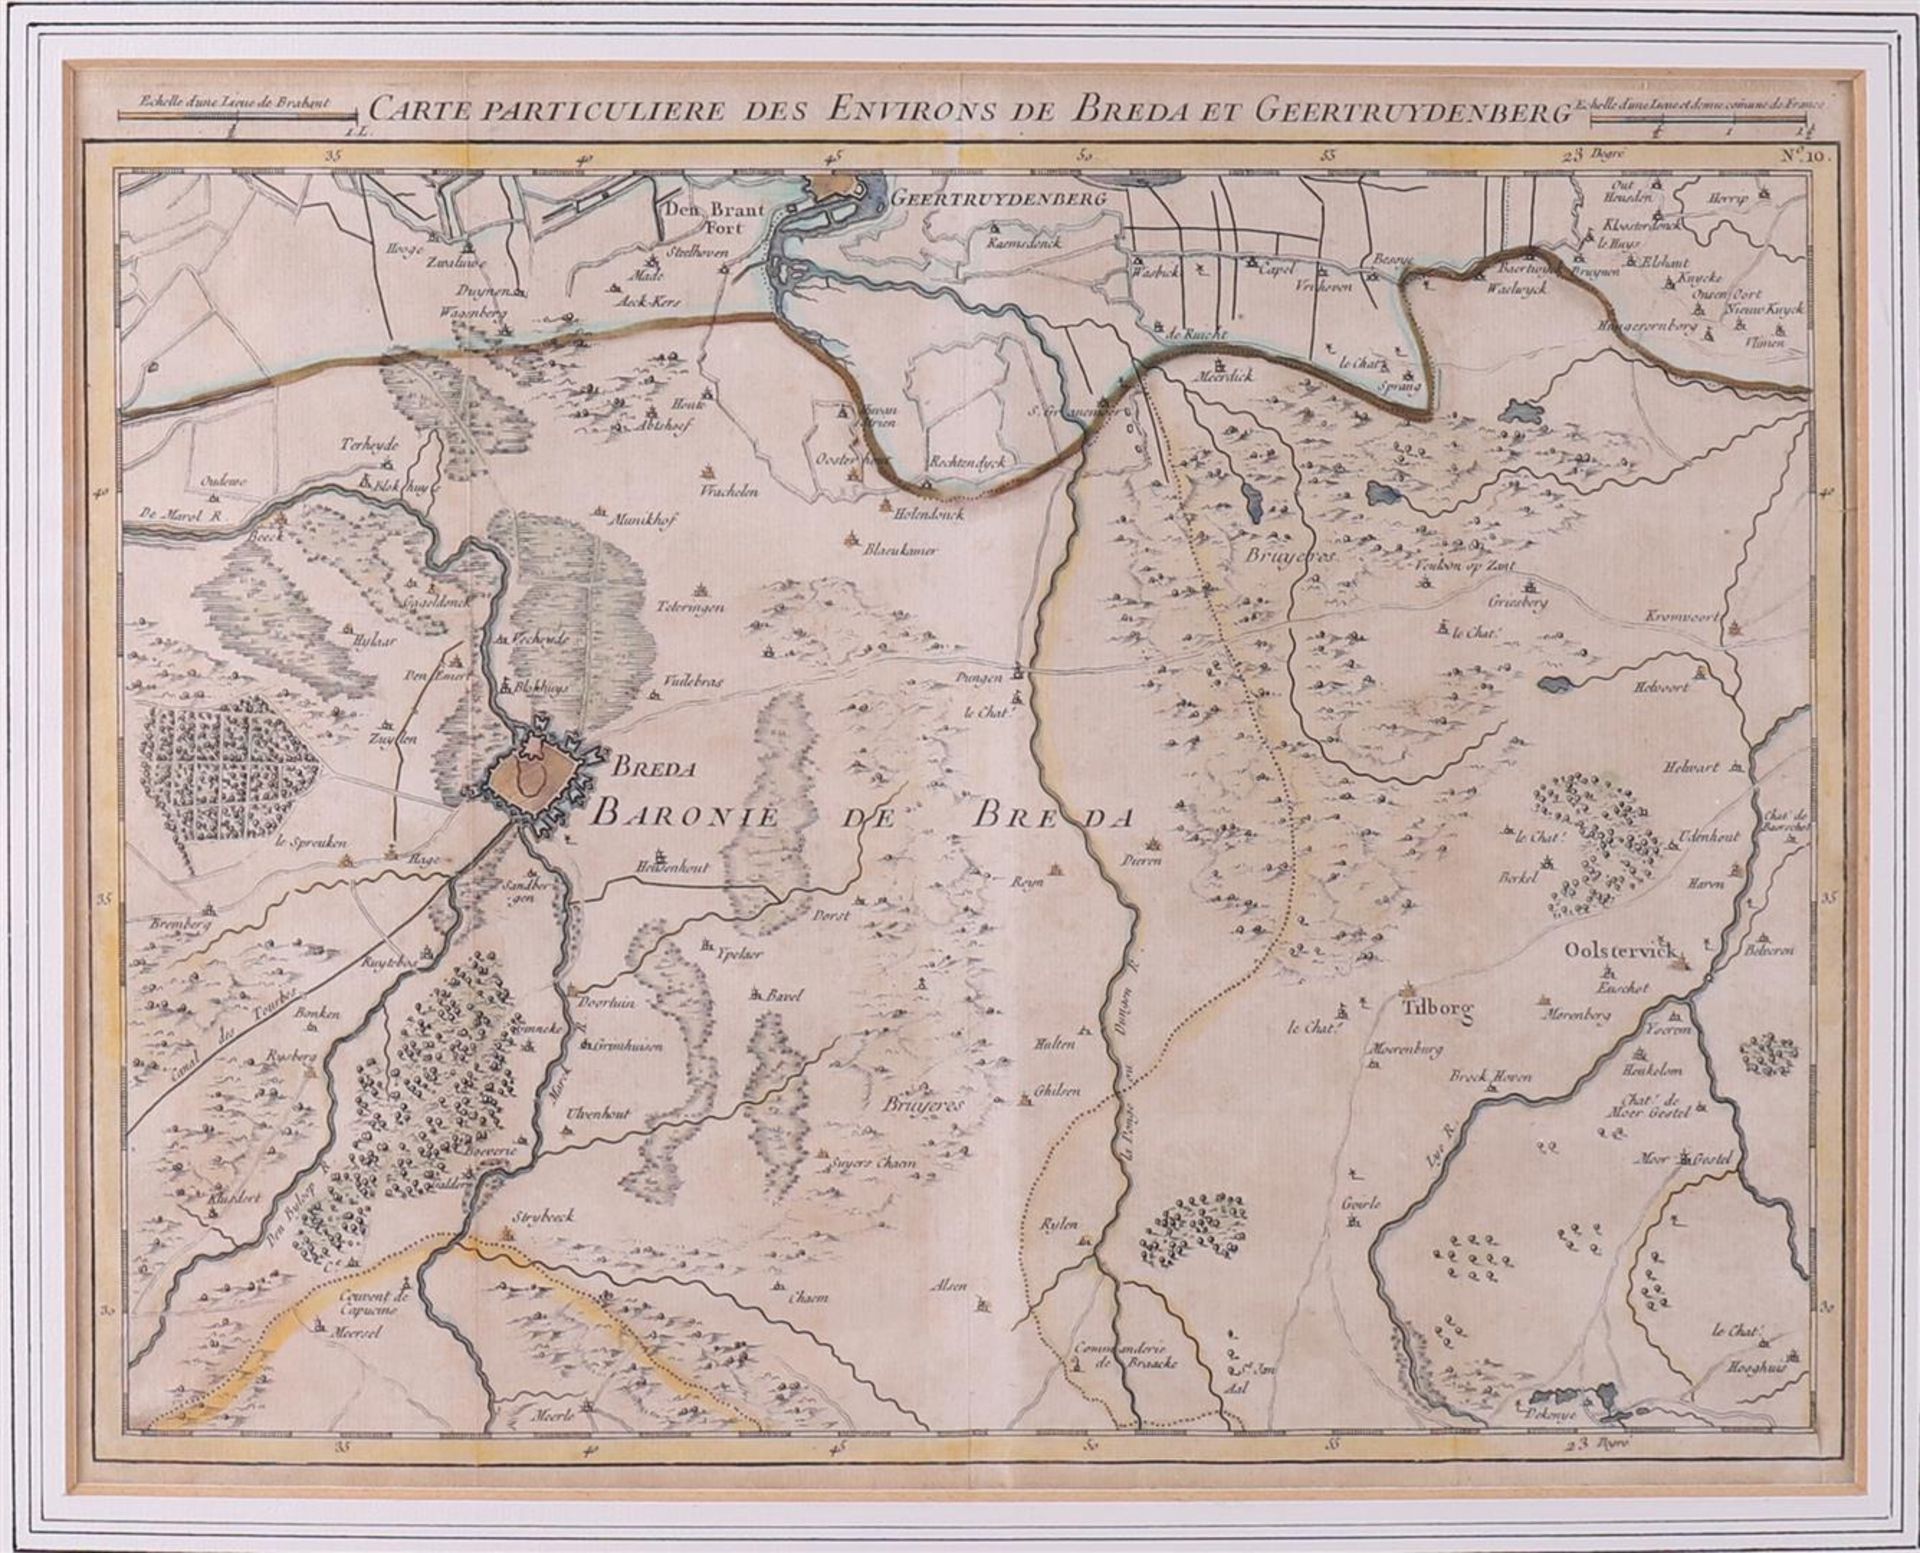 Topography. Carte particulière des environs de Breda et Geertruydenberg, - Bild 2 aus 2